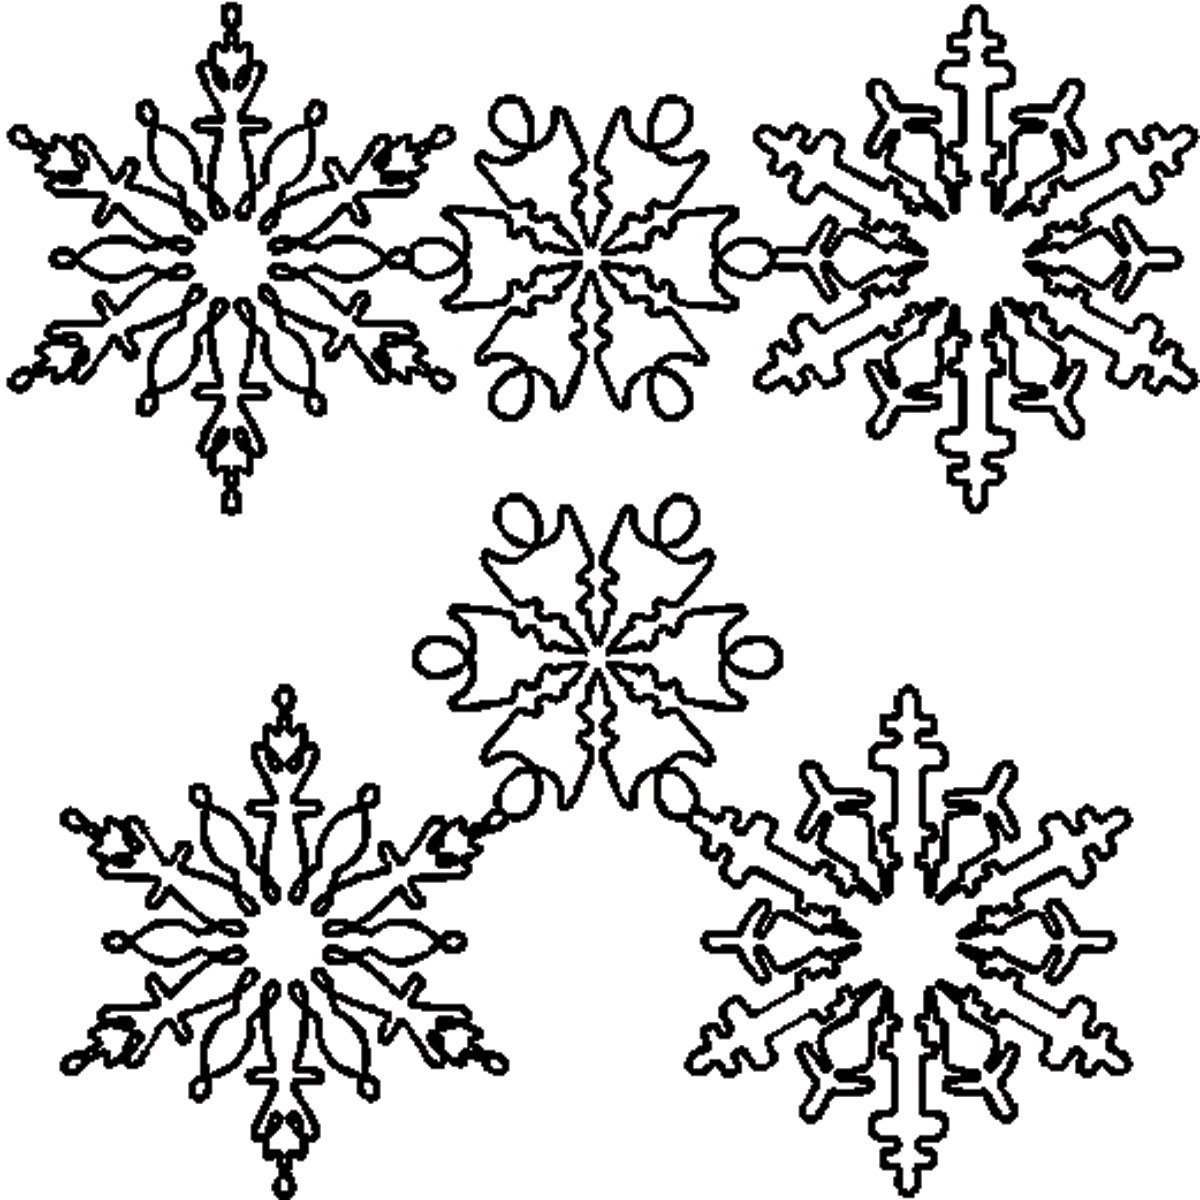 Сложная снежинка. Снежинка раскраска. Снежинка рисунок. Снежинки черно белые. Cytlbyrb рисунок.